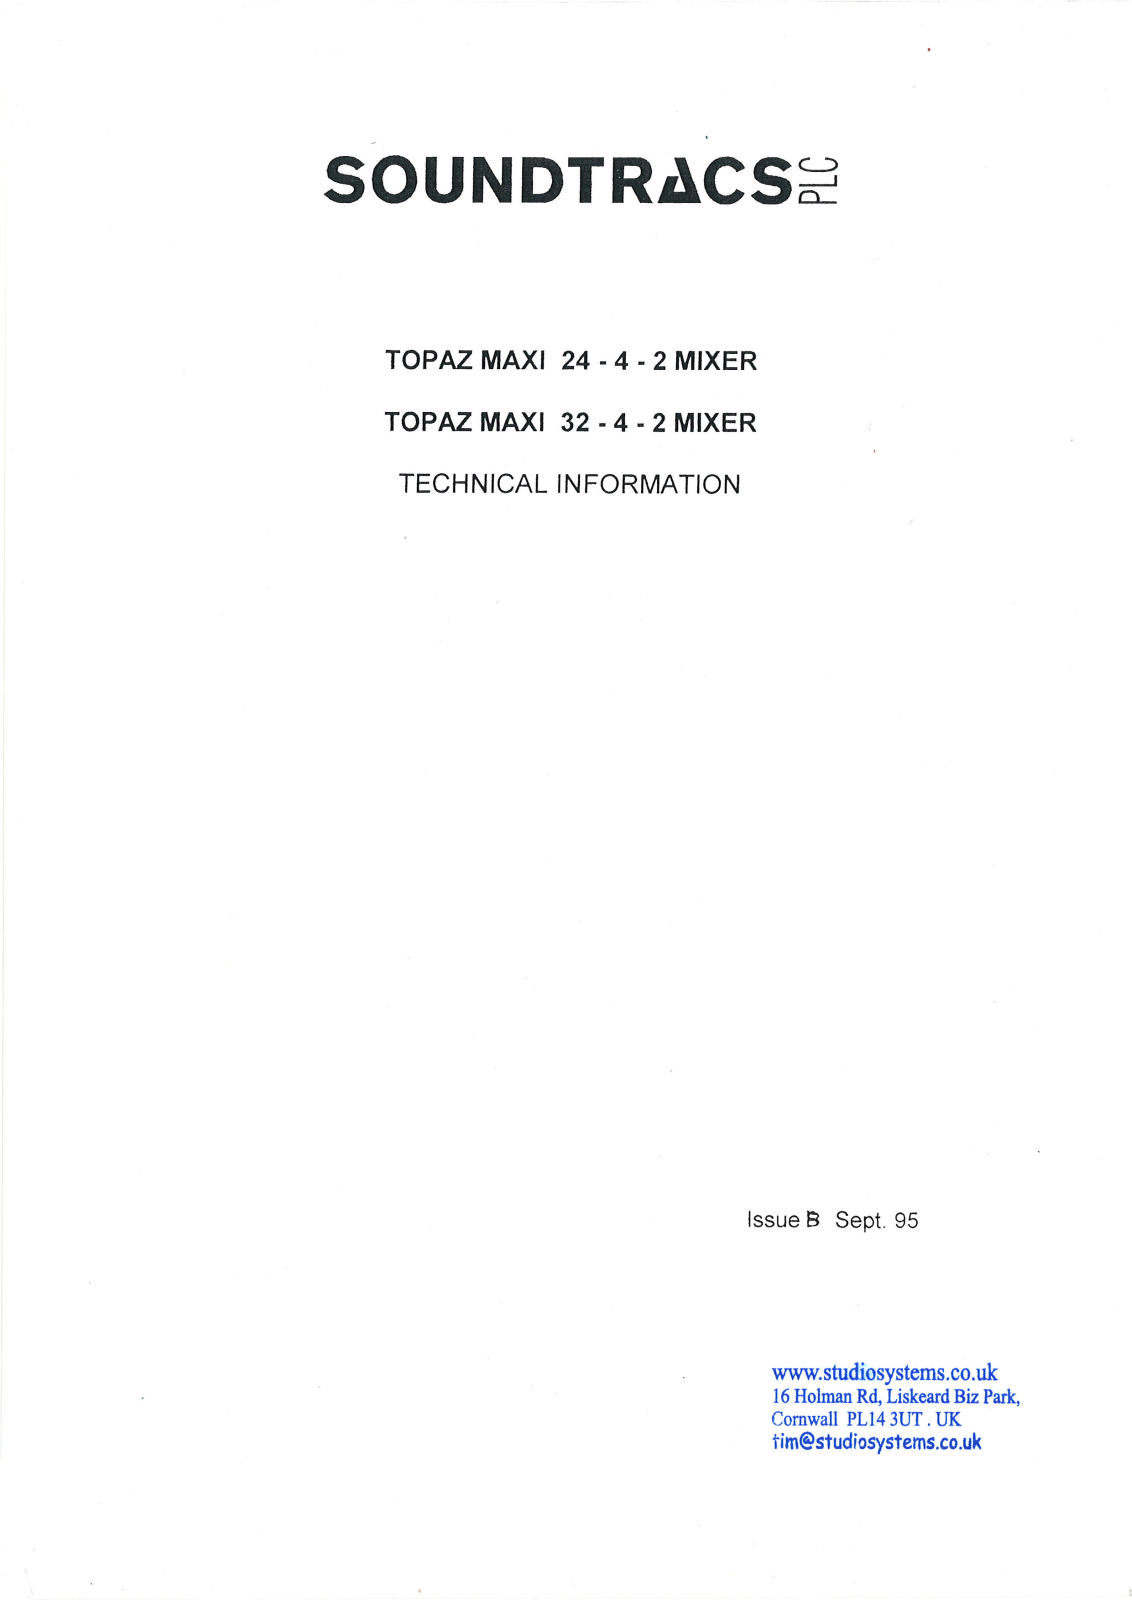 Soundtracs PLC Topaz Maxi 24-4-2, Topaz Maxi 32-4-2 Service Manual